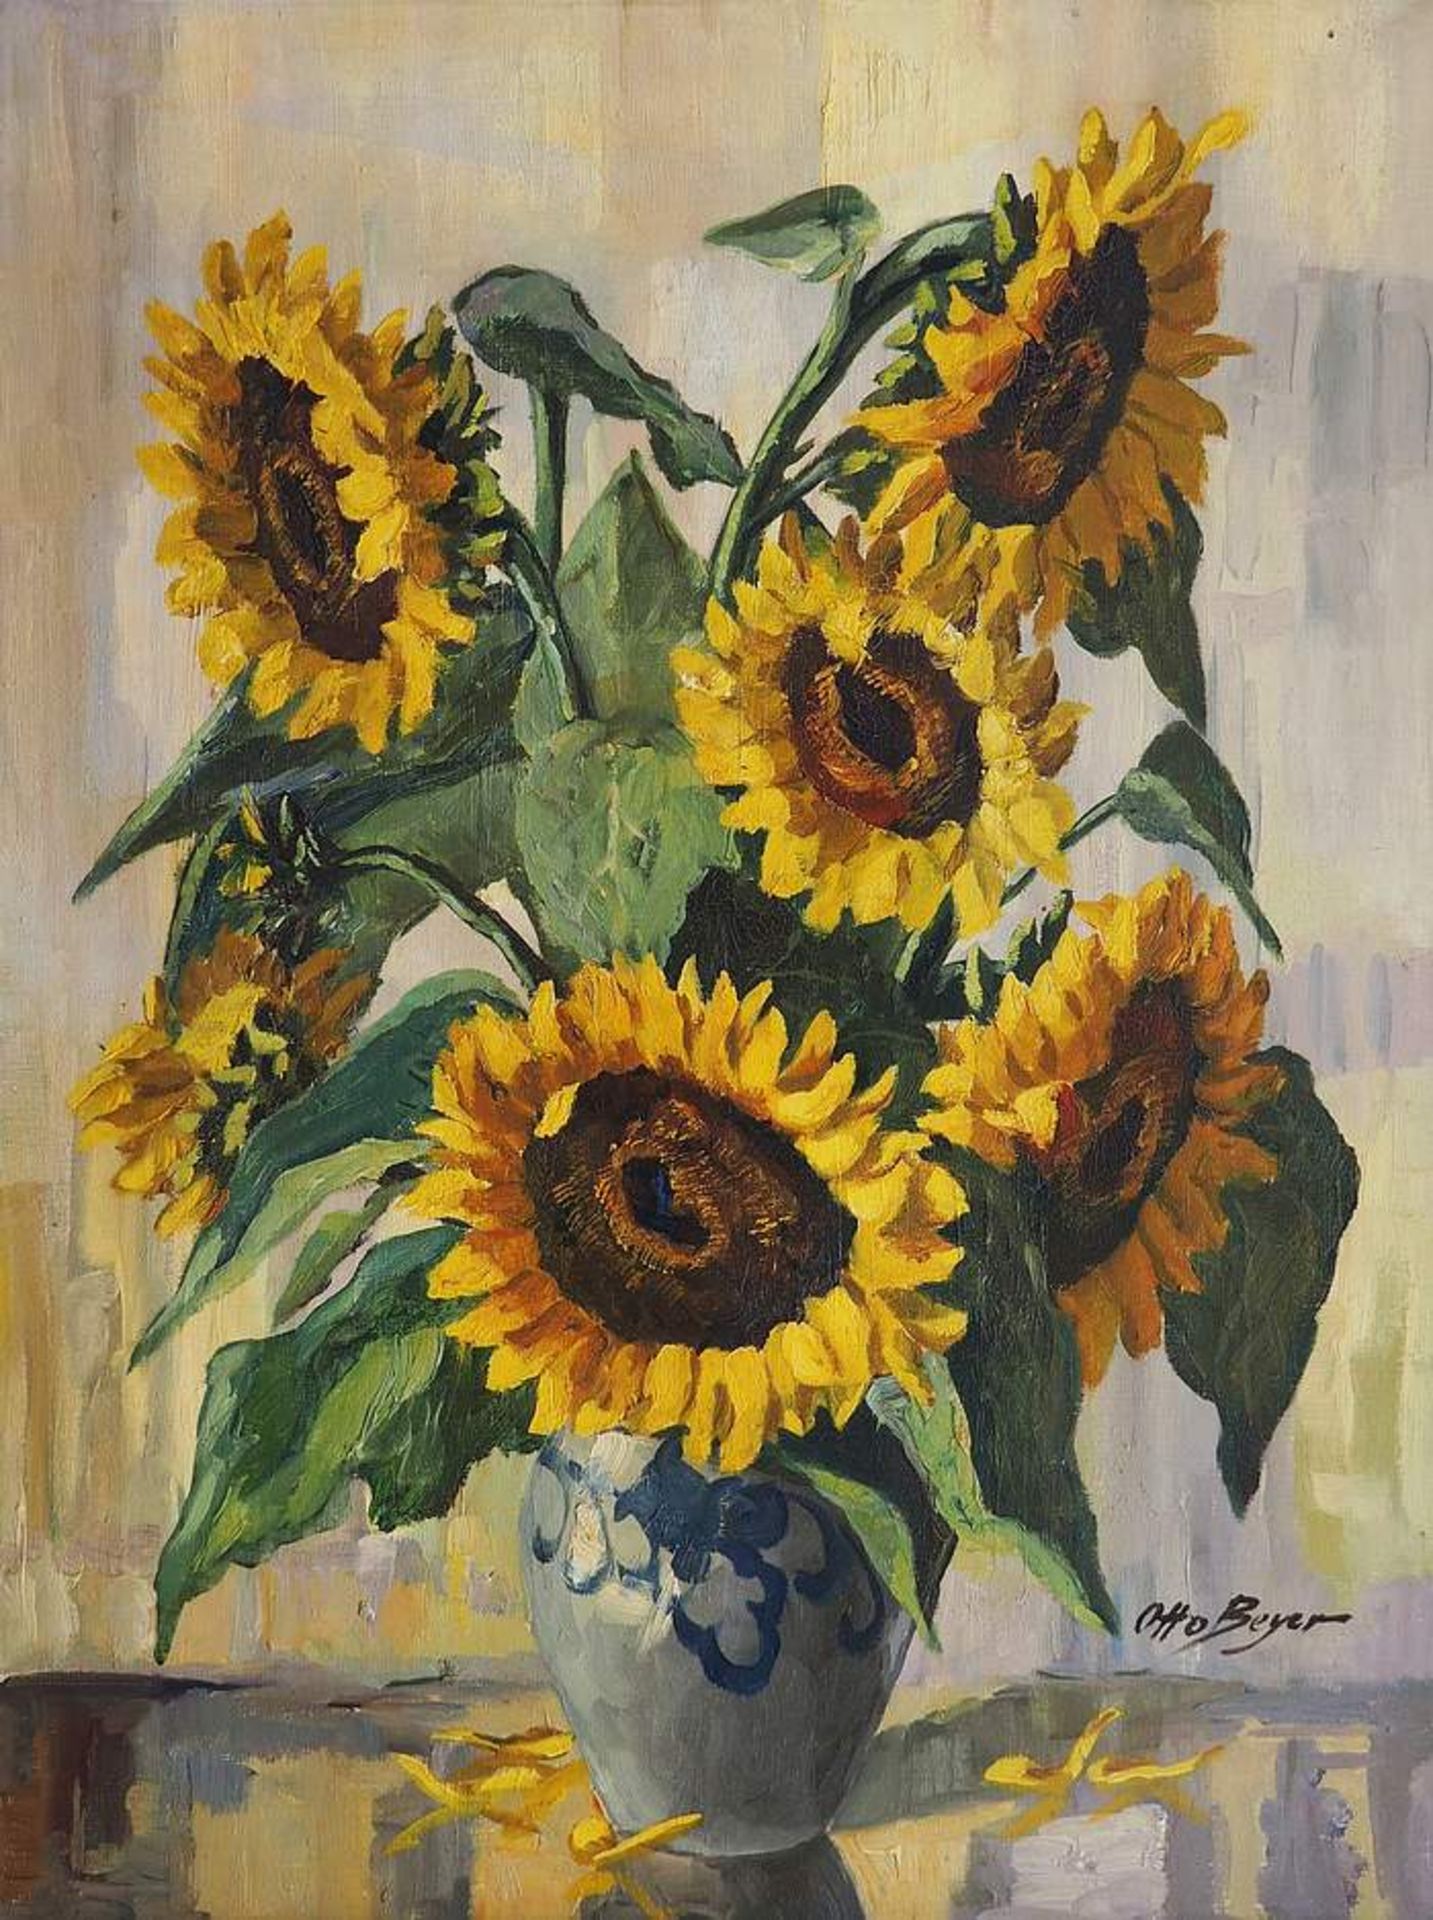 BEYER, Otto . 1885 Kattowitz - 1962 Berlin. Blumenstilleben mit Sonnenblumen. Öl auf Leinwand,